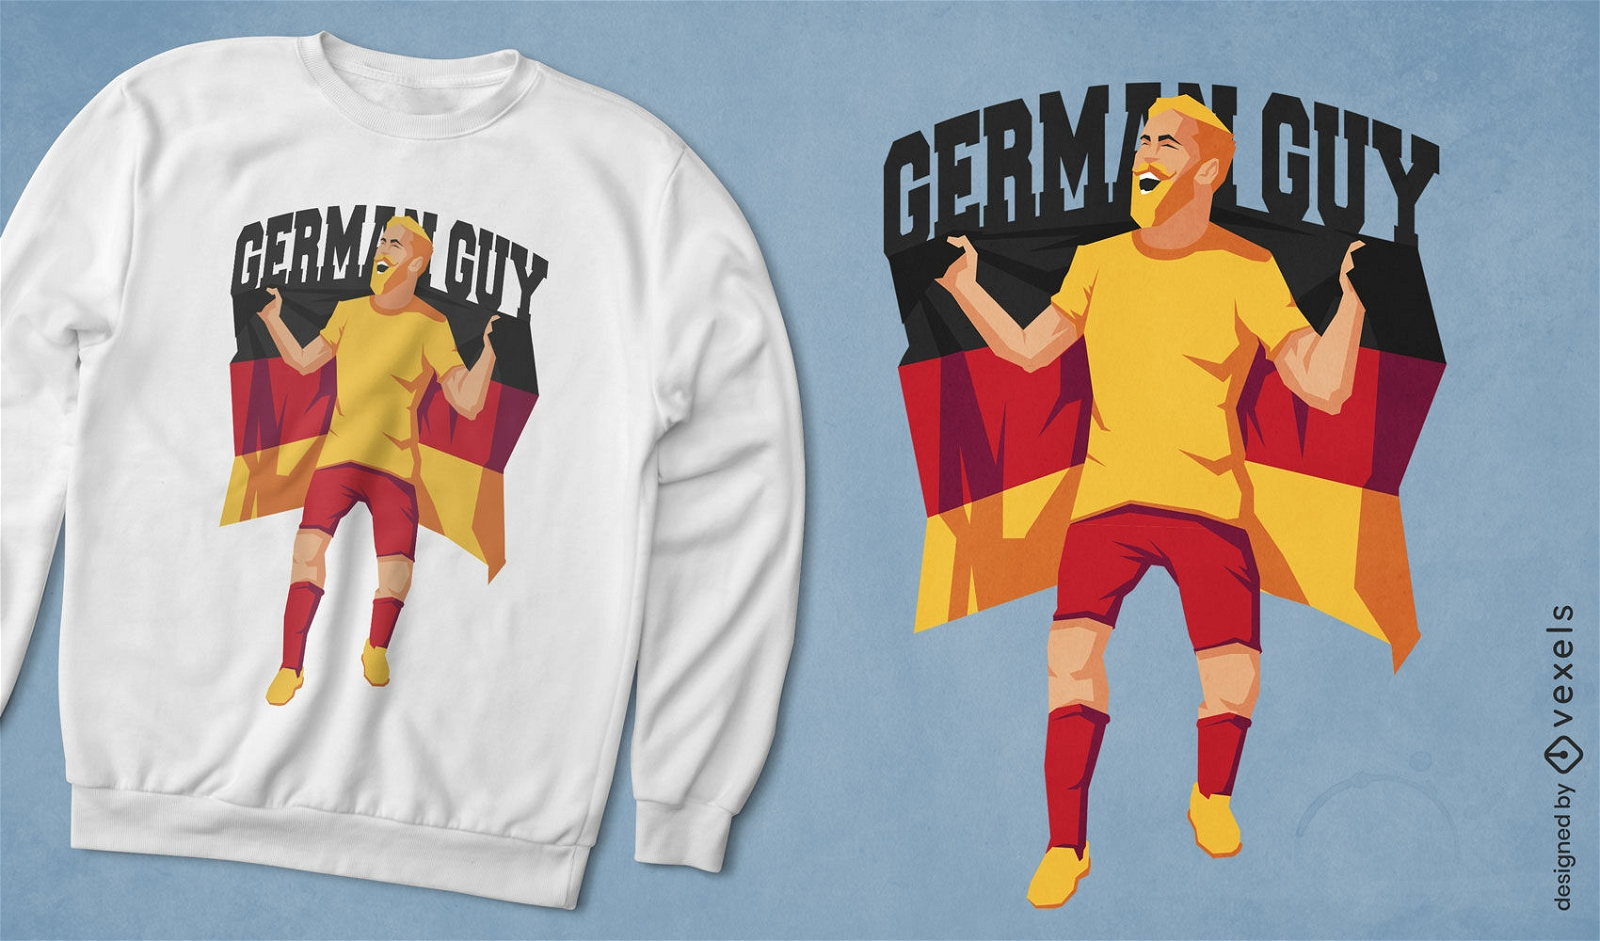 Mann mit deutschem Flaggen-T-Shirt-Design